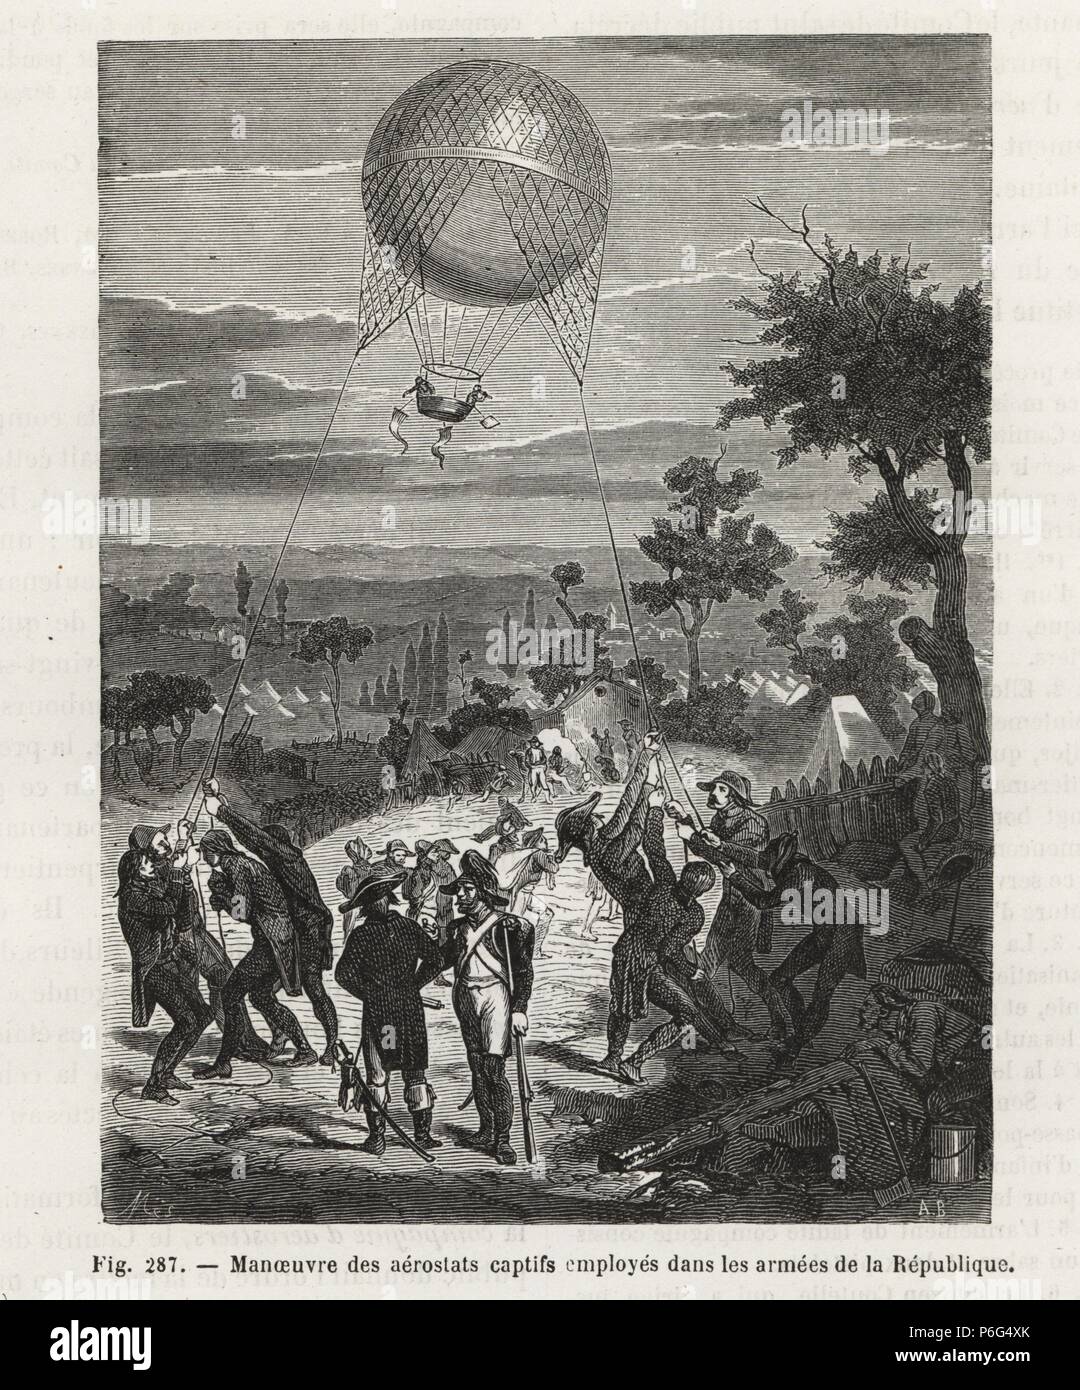 Les soldats de l'Armée révolutionnaire française à l'aide de cordes pour  positionner les ballons captifs durant une bataille, fin du 18e siècle. La  gravure sur bois par Mes après A.B. de Louis